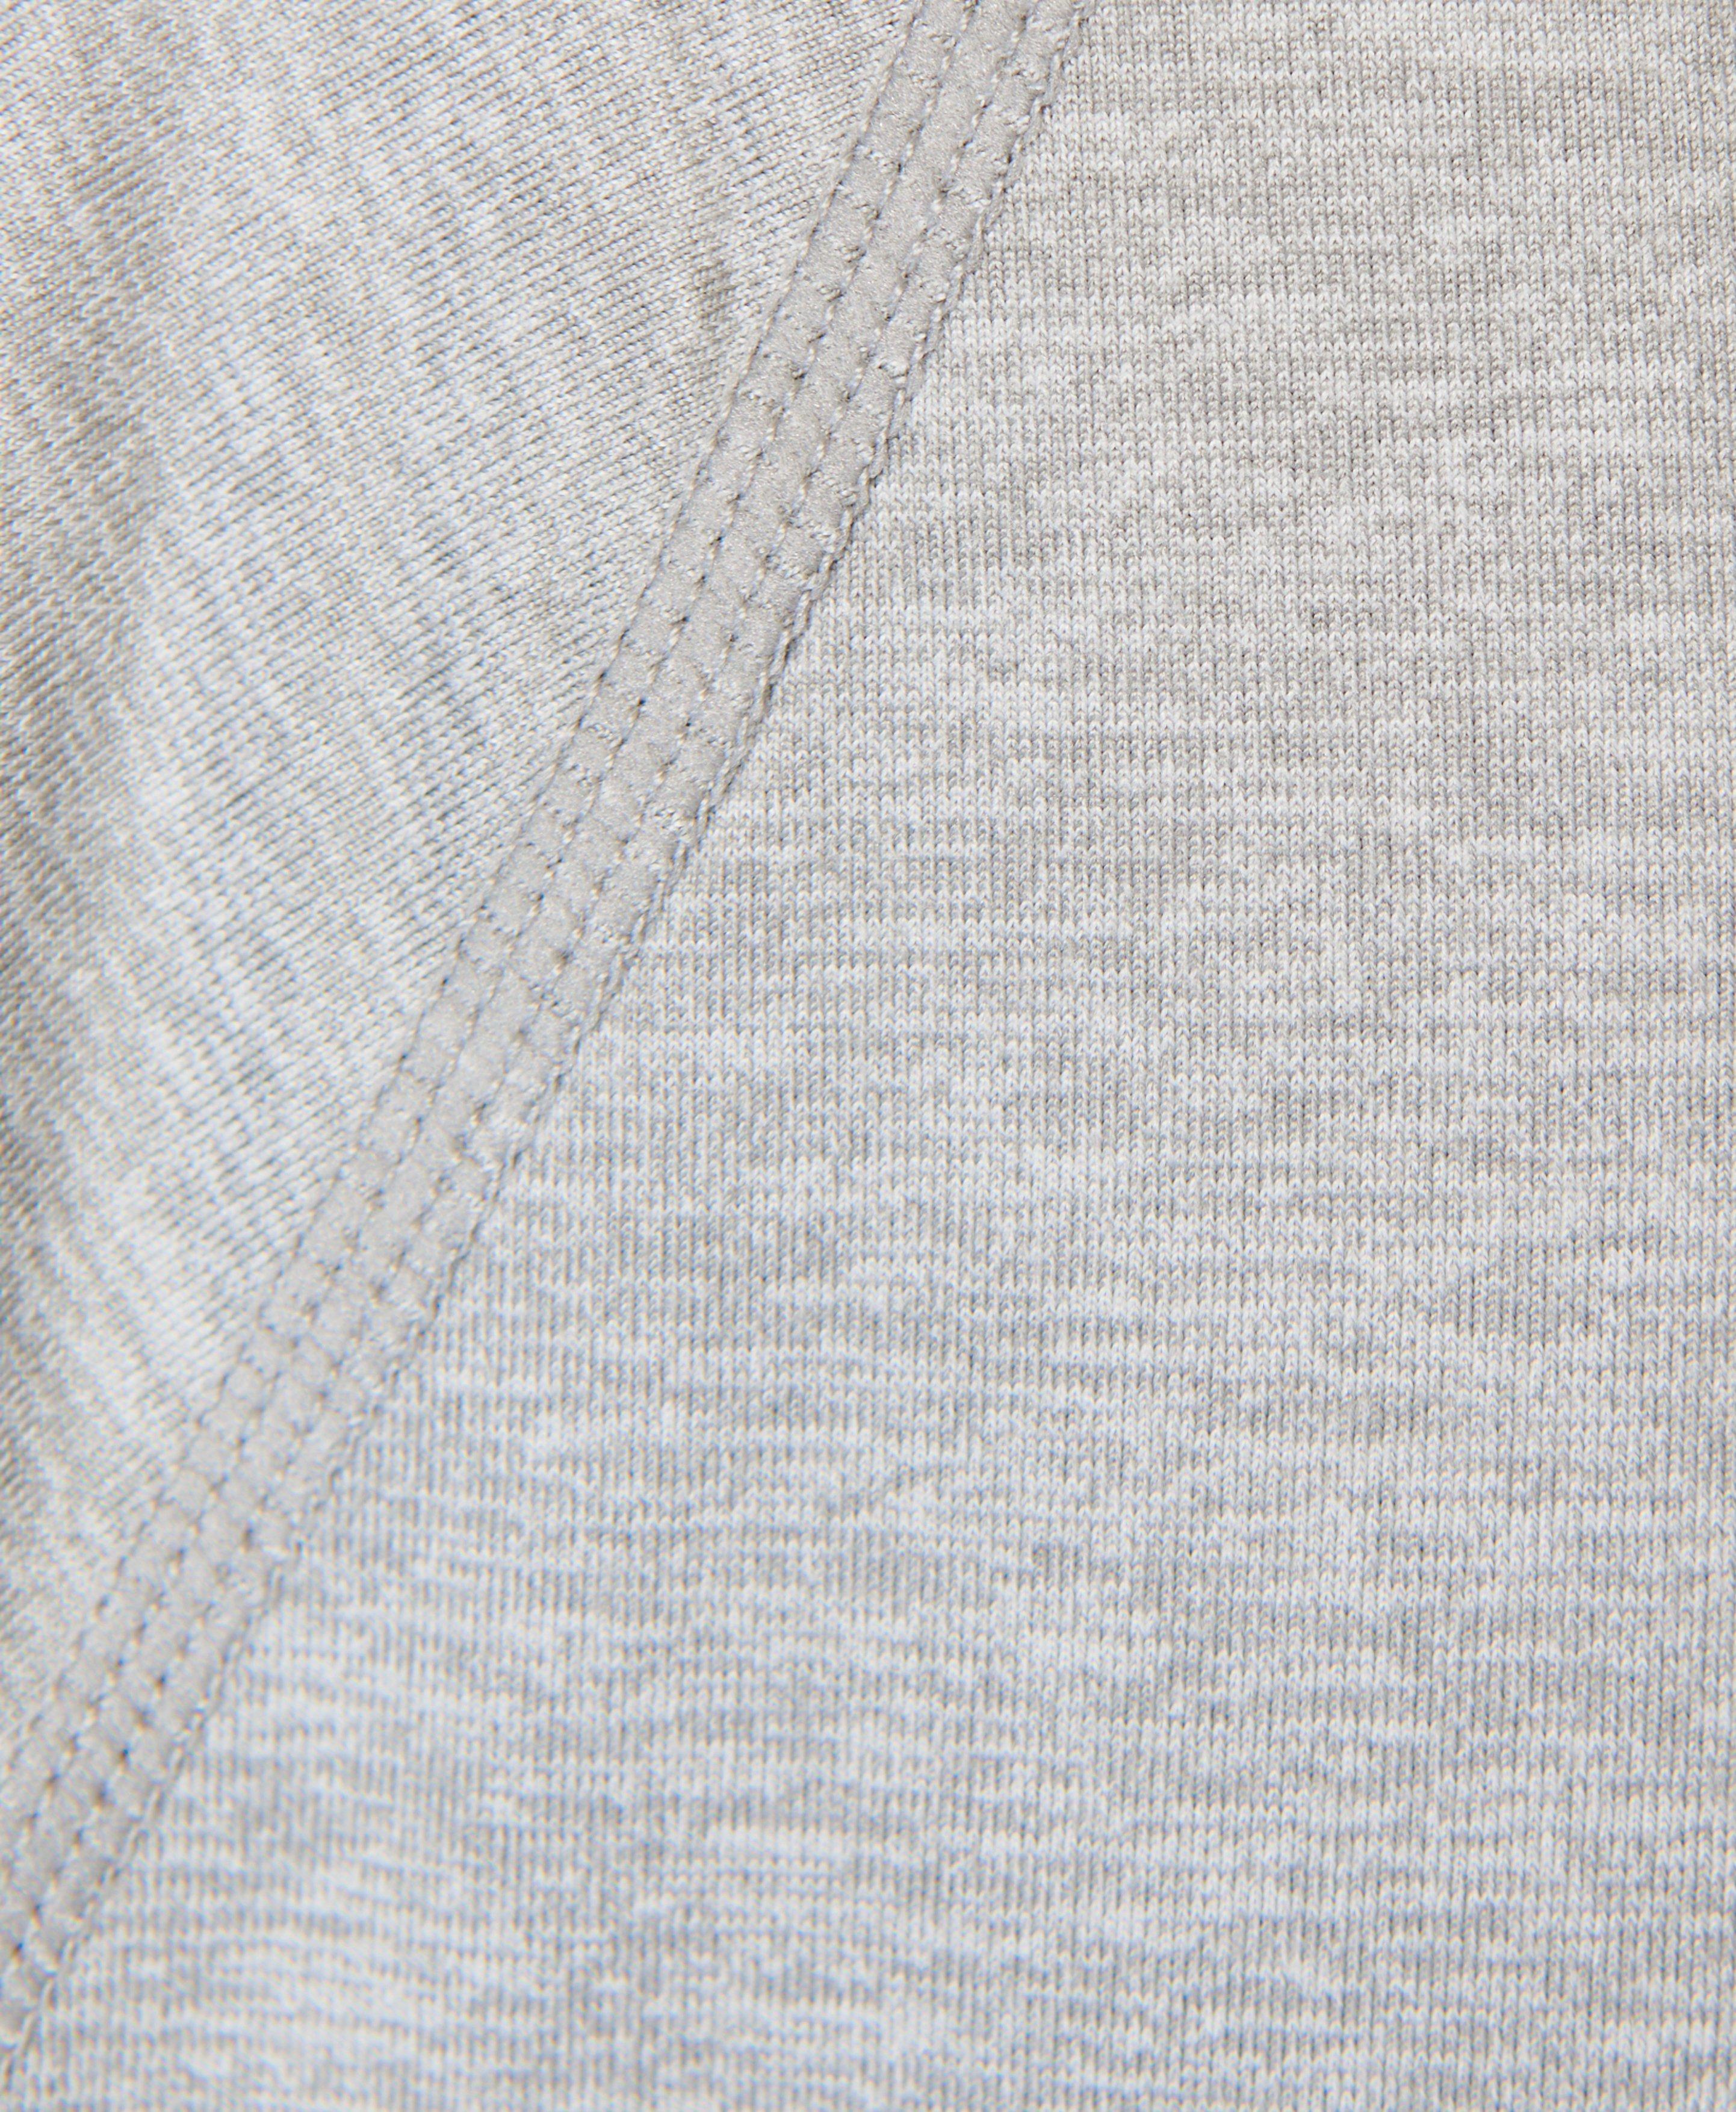 Gaia Yoga Long Sleeve Top - Light Grey Marl